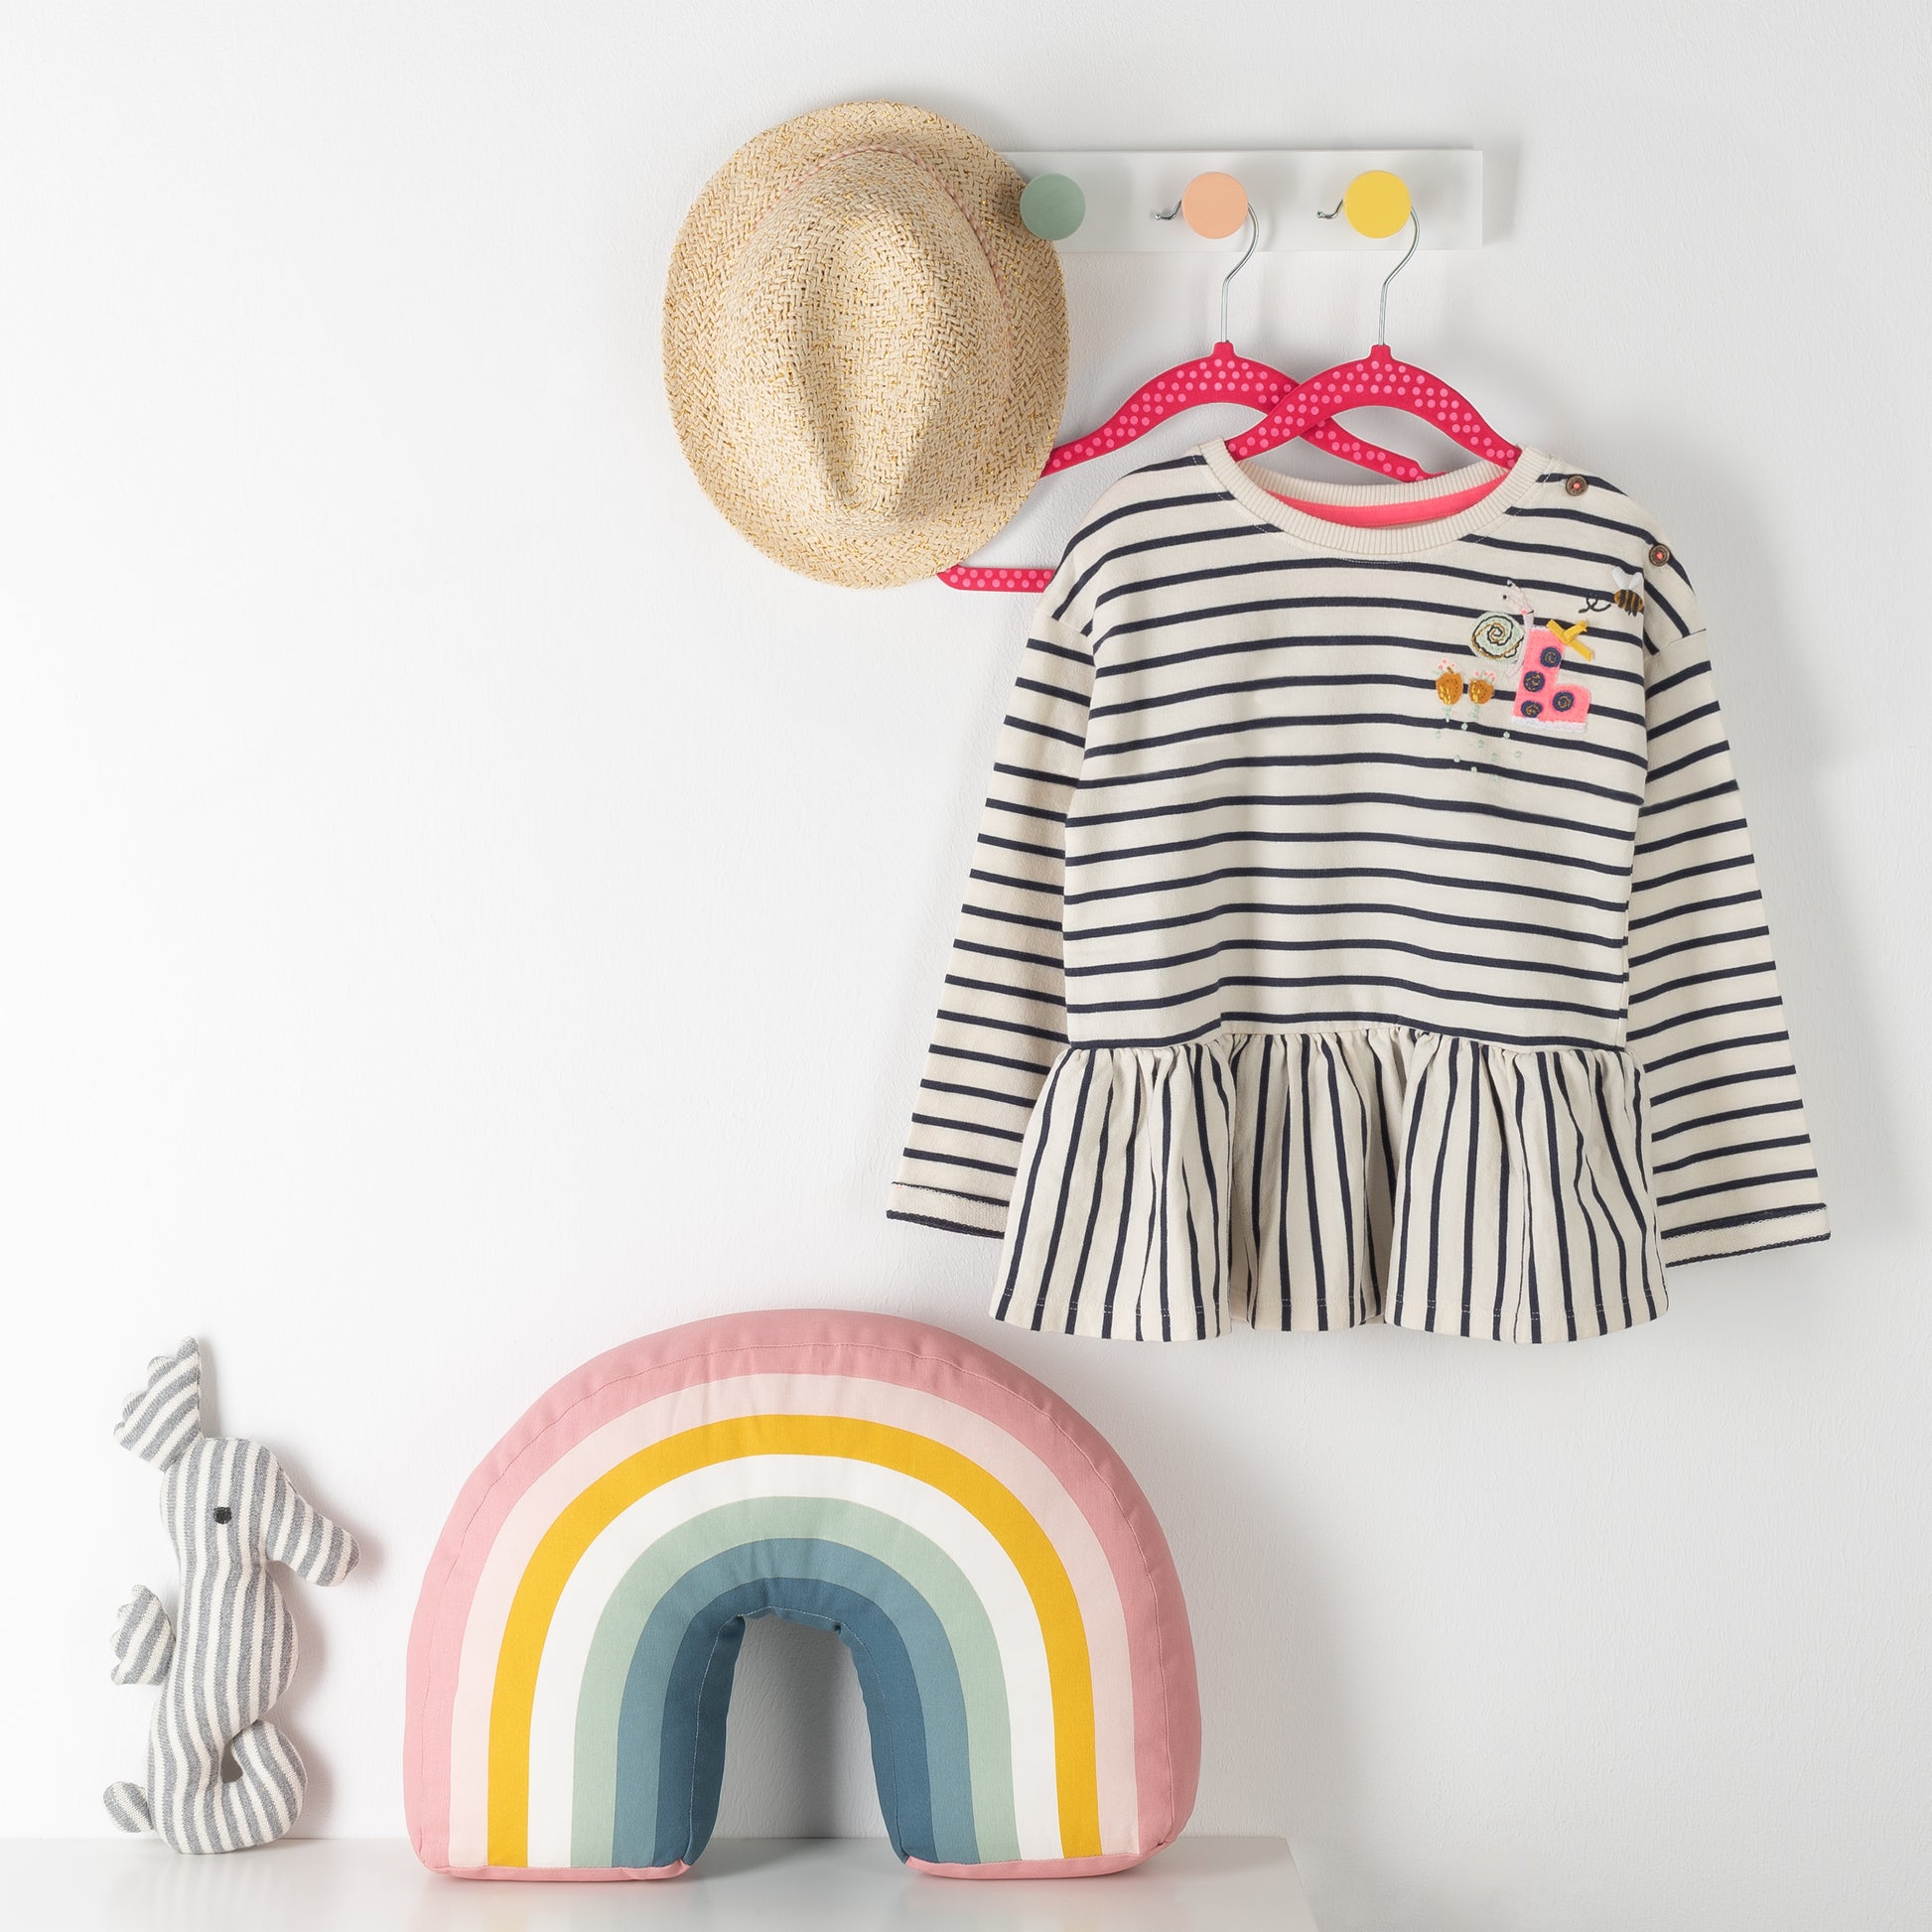 Wandhaken mit Strohhut und gestreiftem Kinderkleid auf pinkem Kinderkleiderbügel neben gestreiftem Kissen in Regenbogenfarben